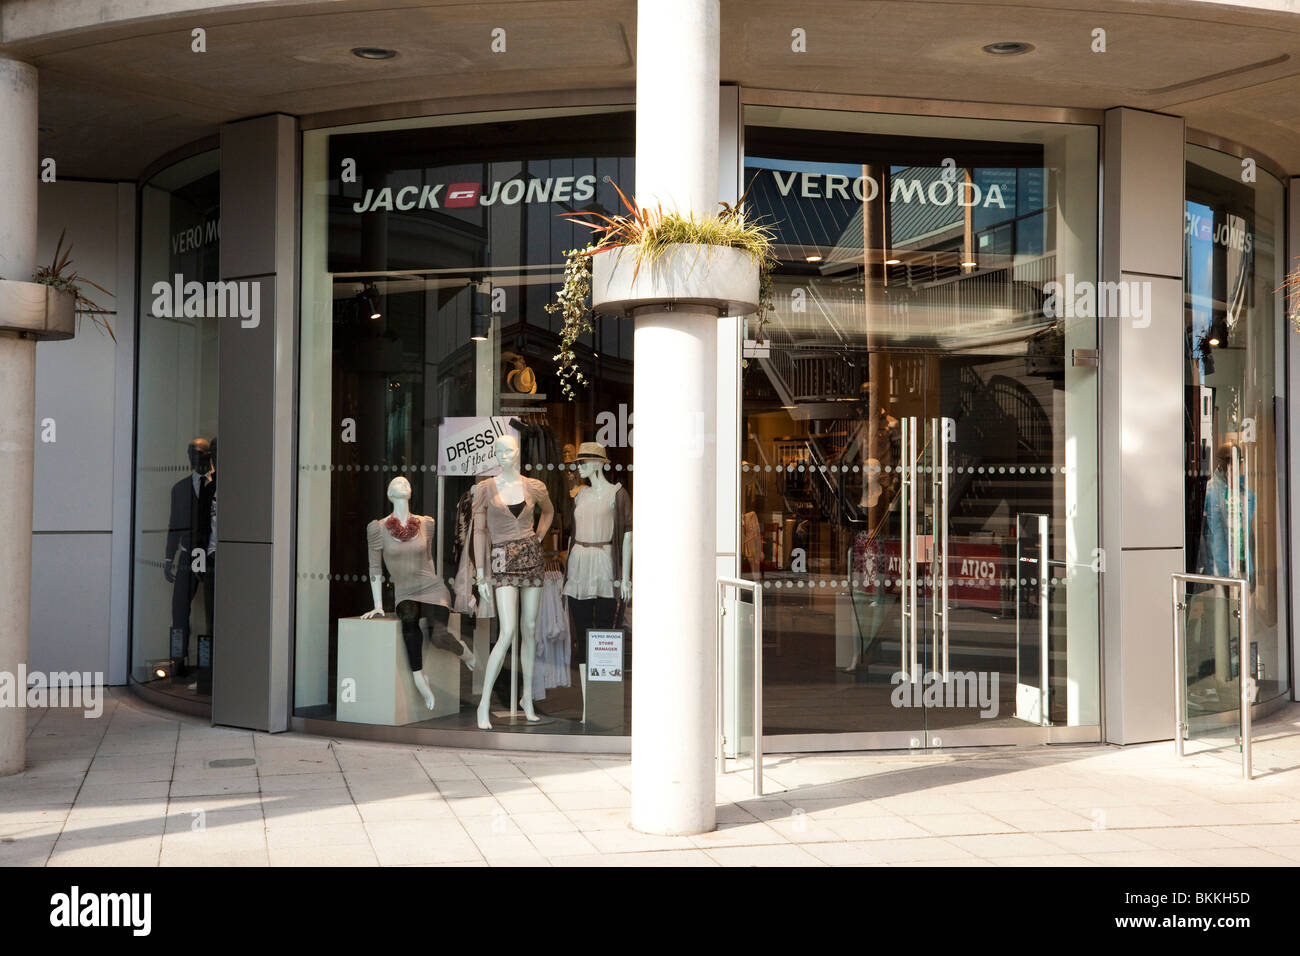 Jones / Vero Moda clothing store Stock Photo - Alamy